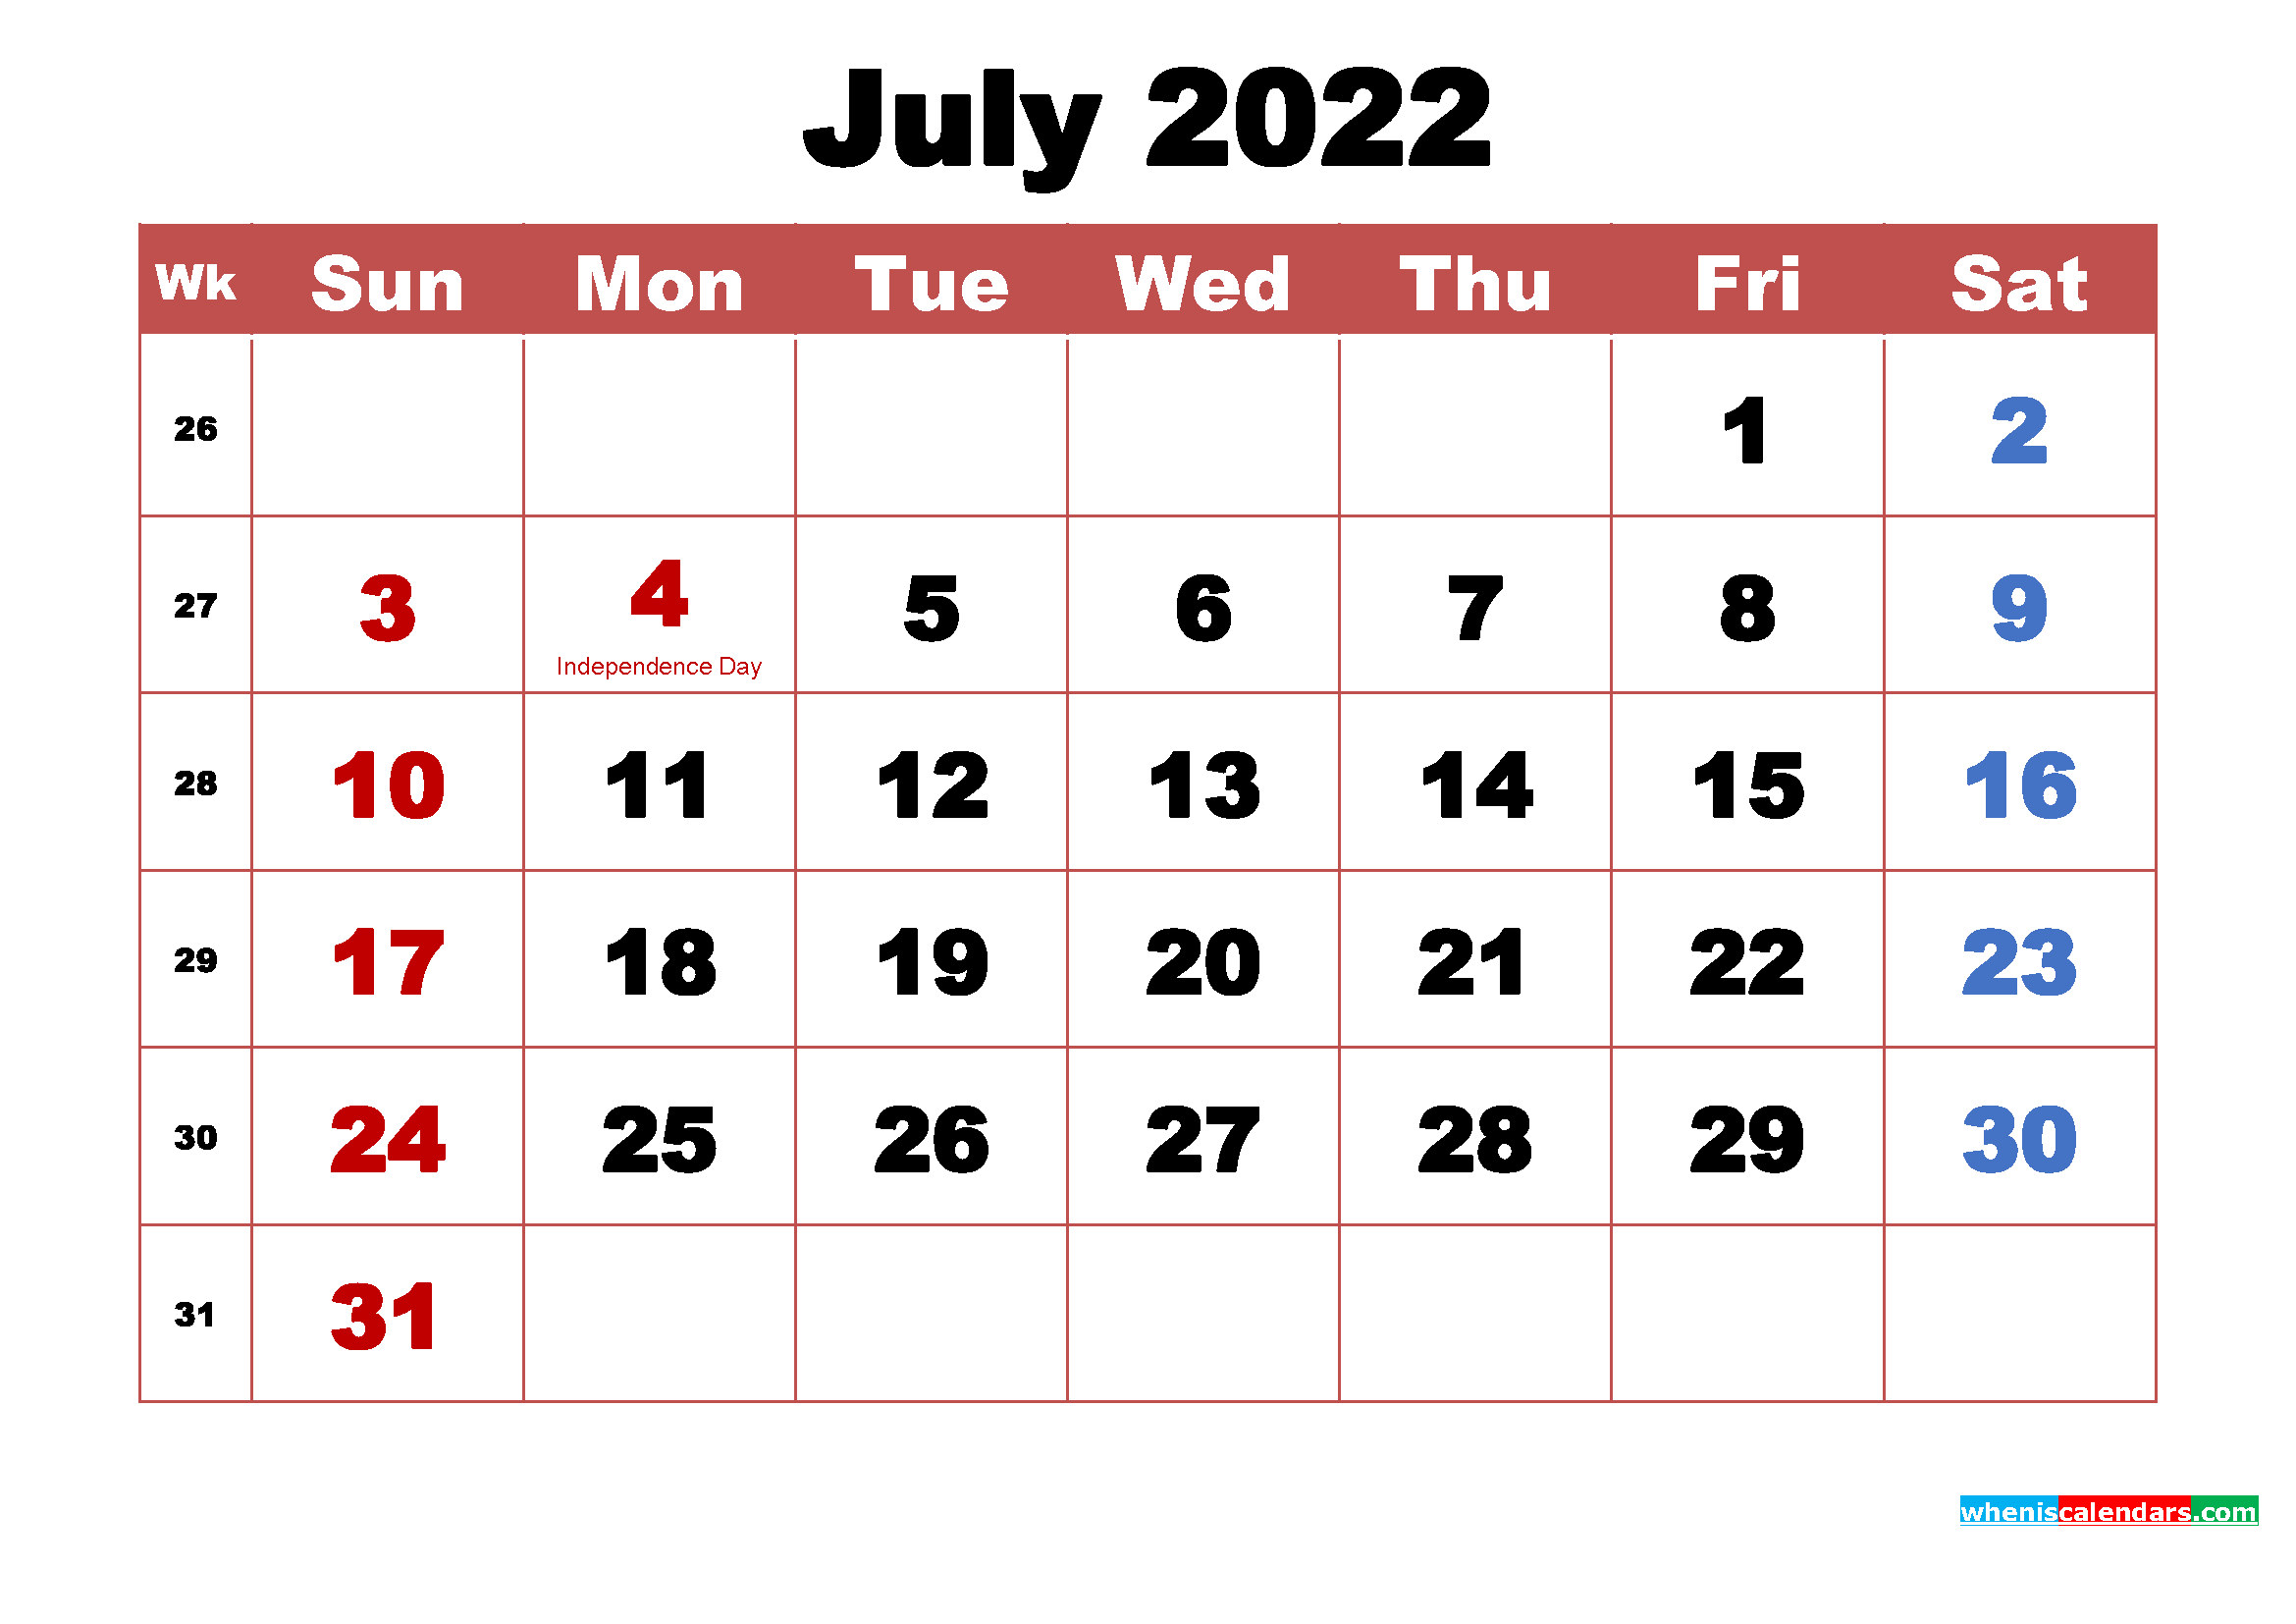 July Calendar Wallpaper High Resolution